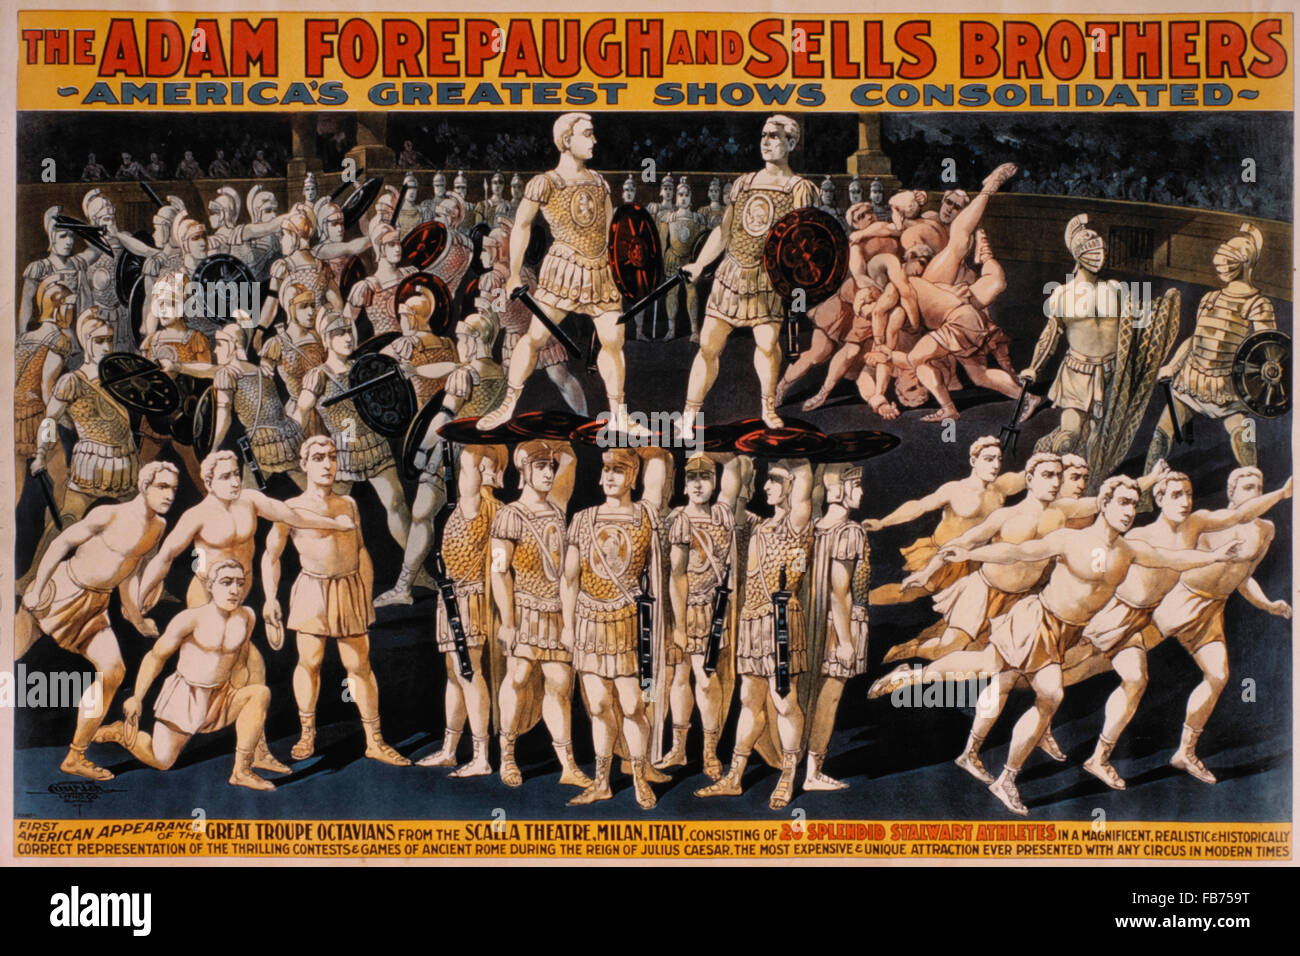 Adam Forepaugh et vend des frères plus grands spectacles de l'Amérique États, First American Apparence de la grande troupe de cirque, Octavians affiche, vers 1900 Banque D'Images